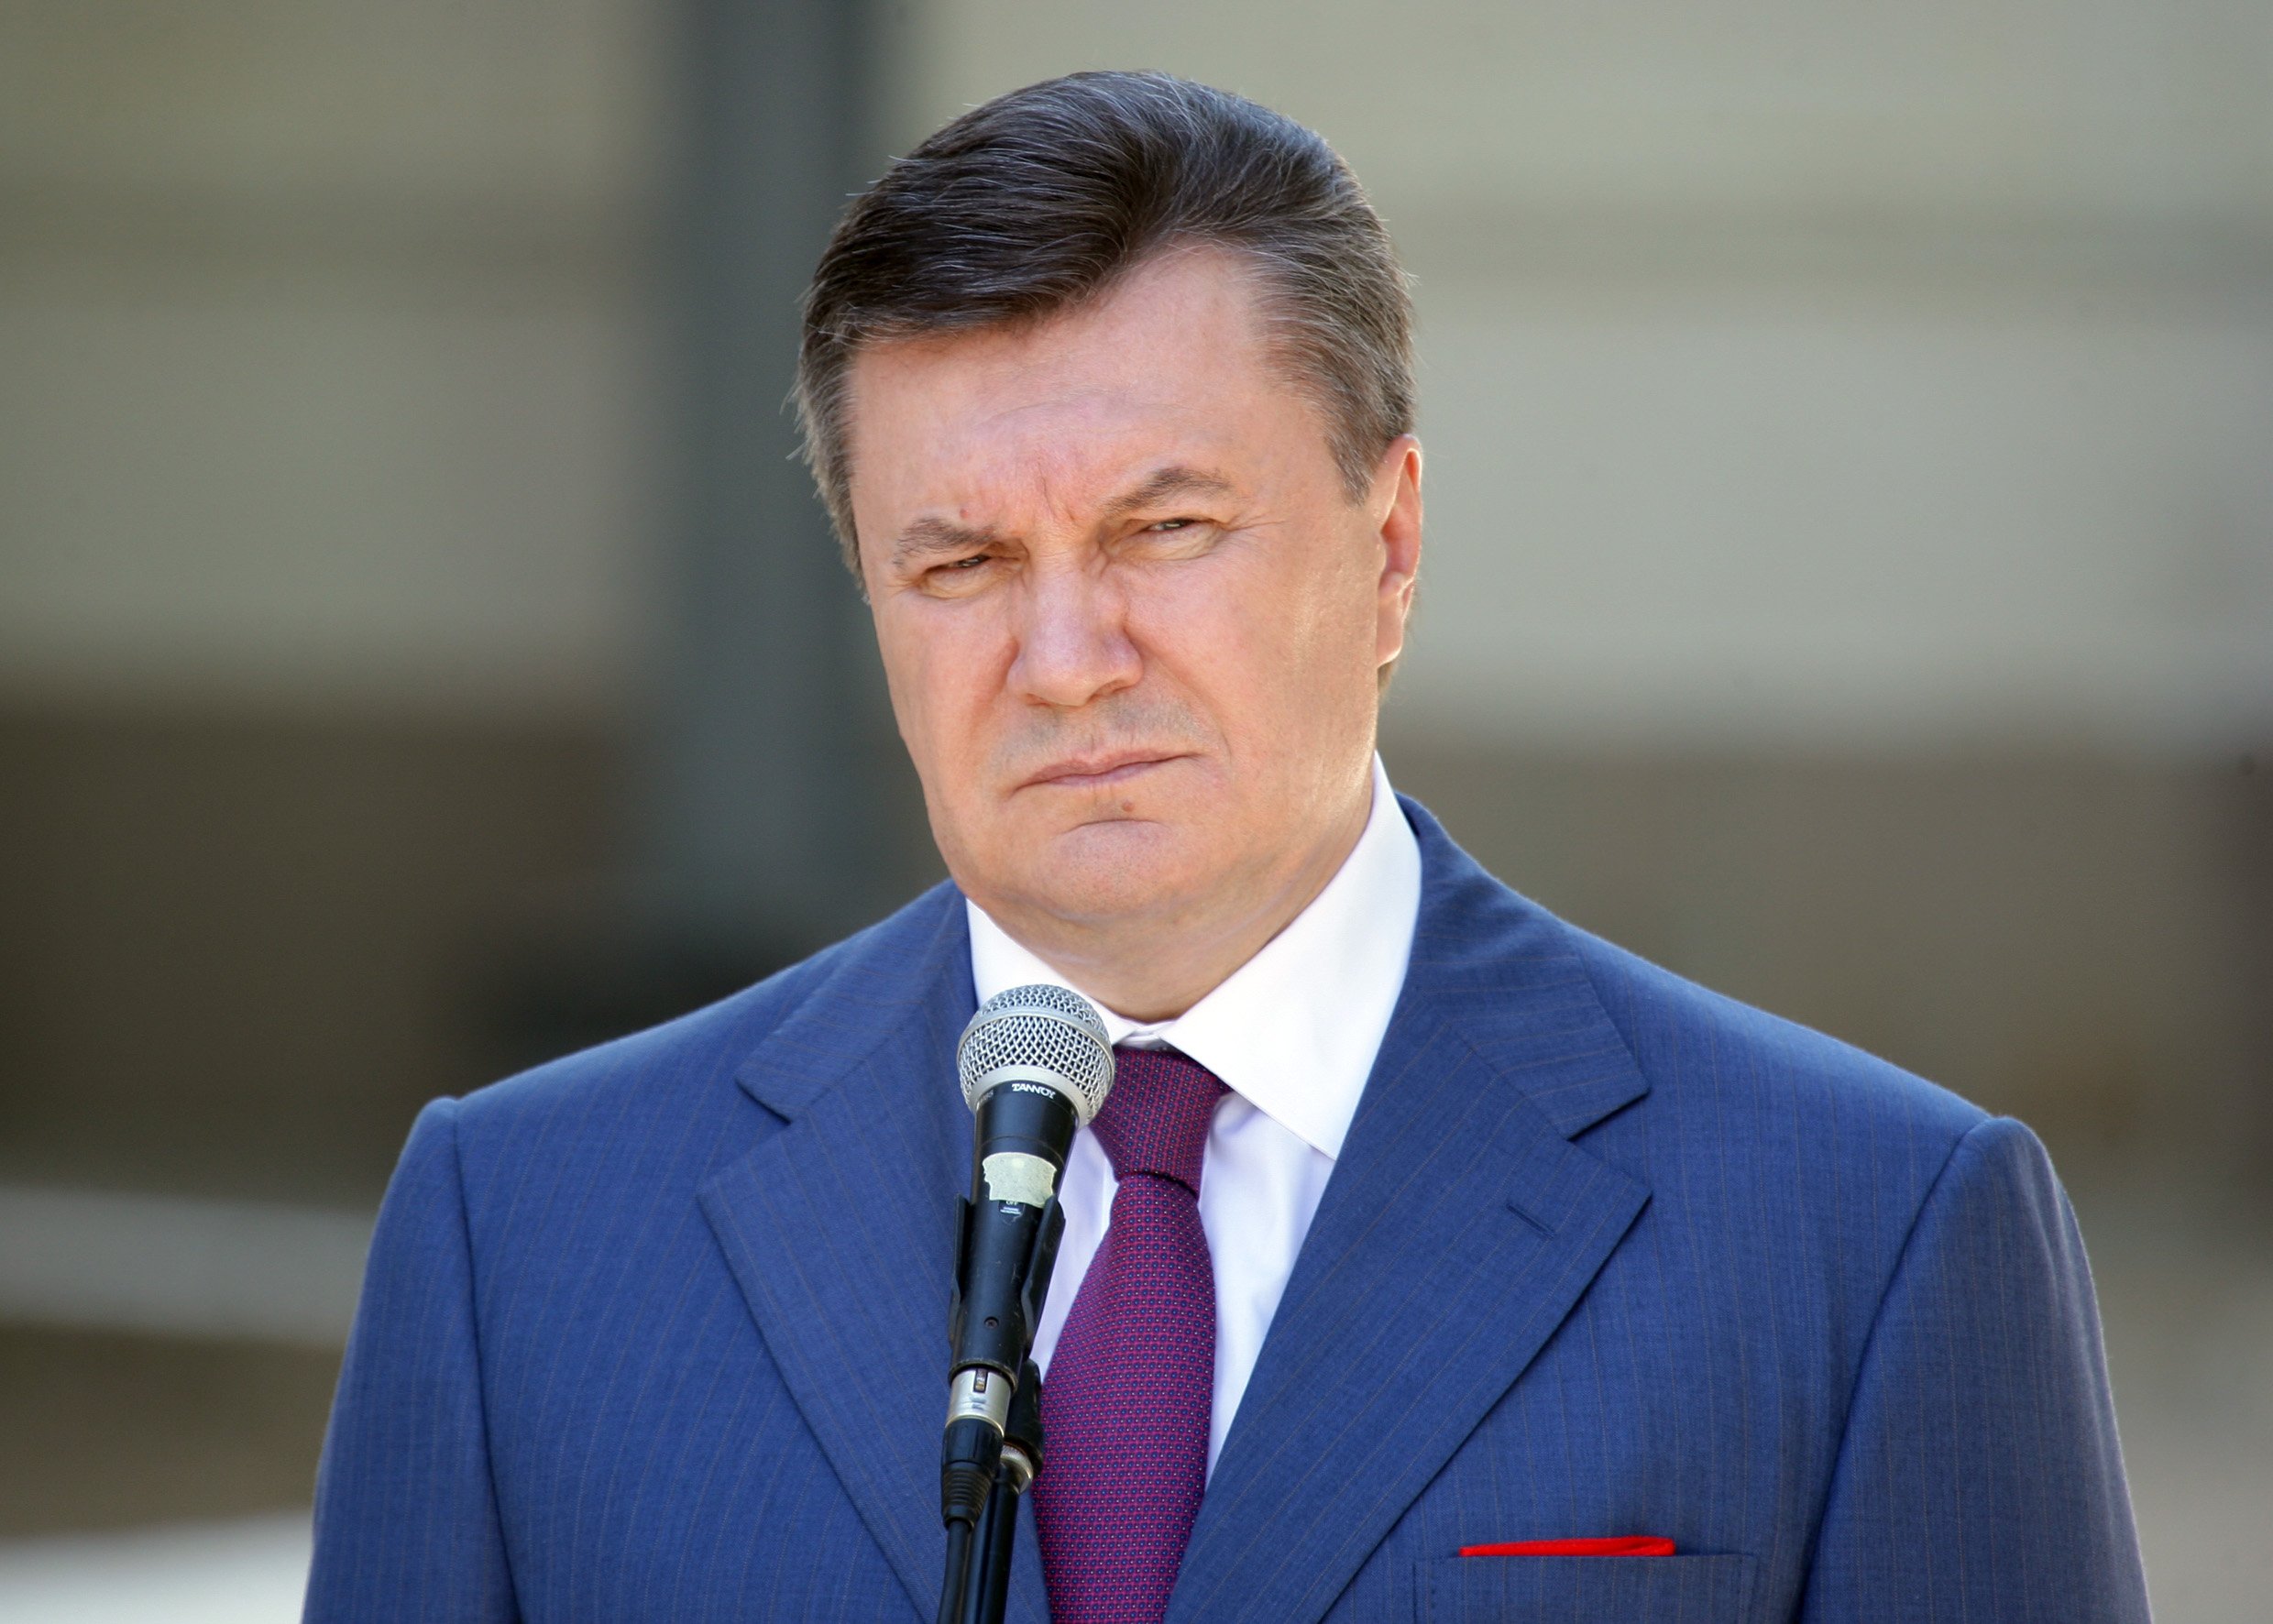 Янукович прилетел в Ростов-на-Дону